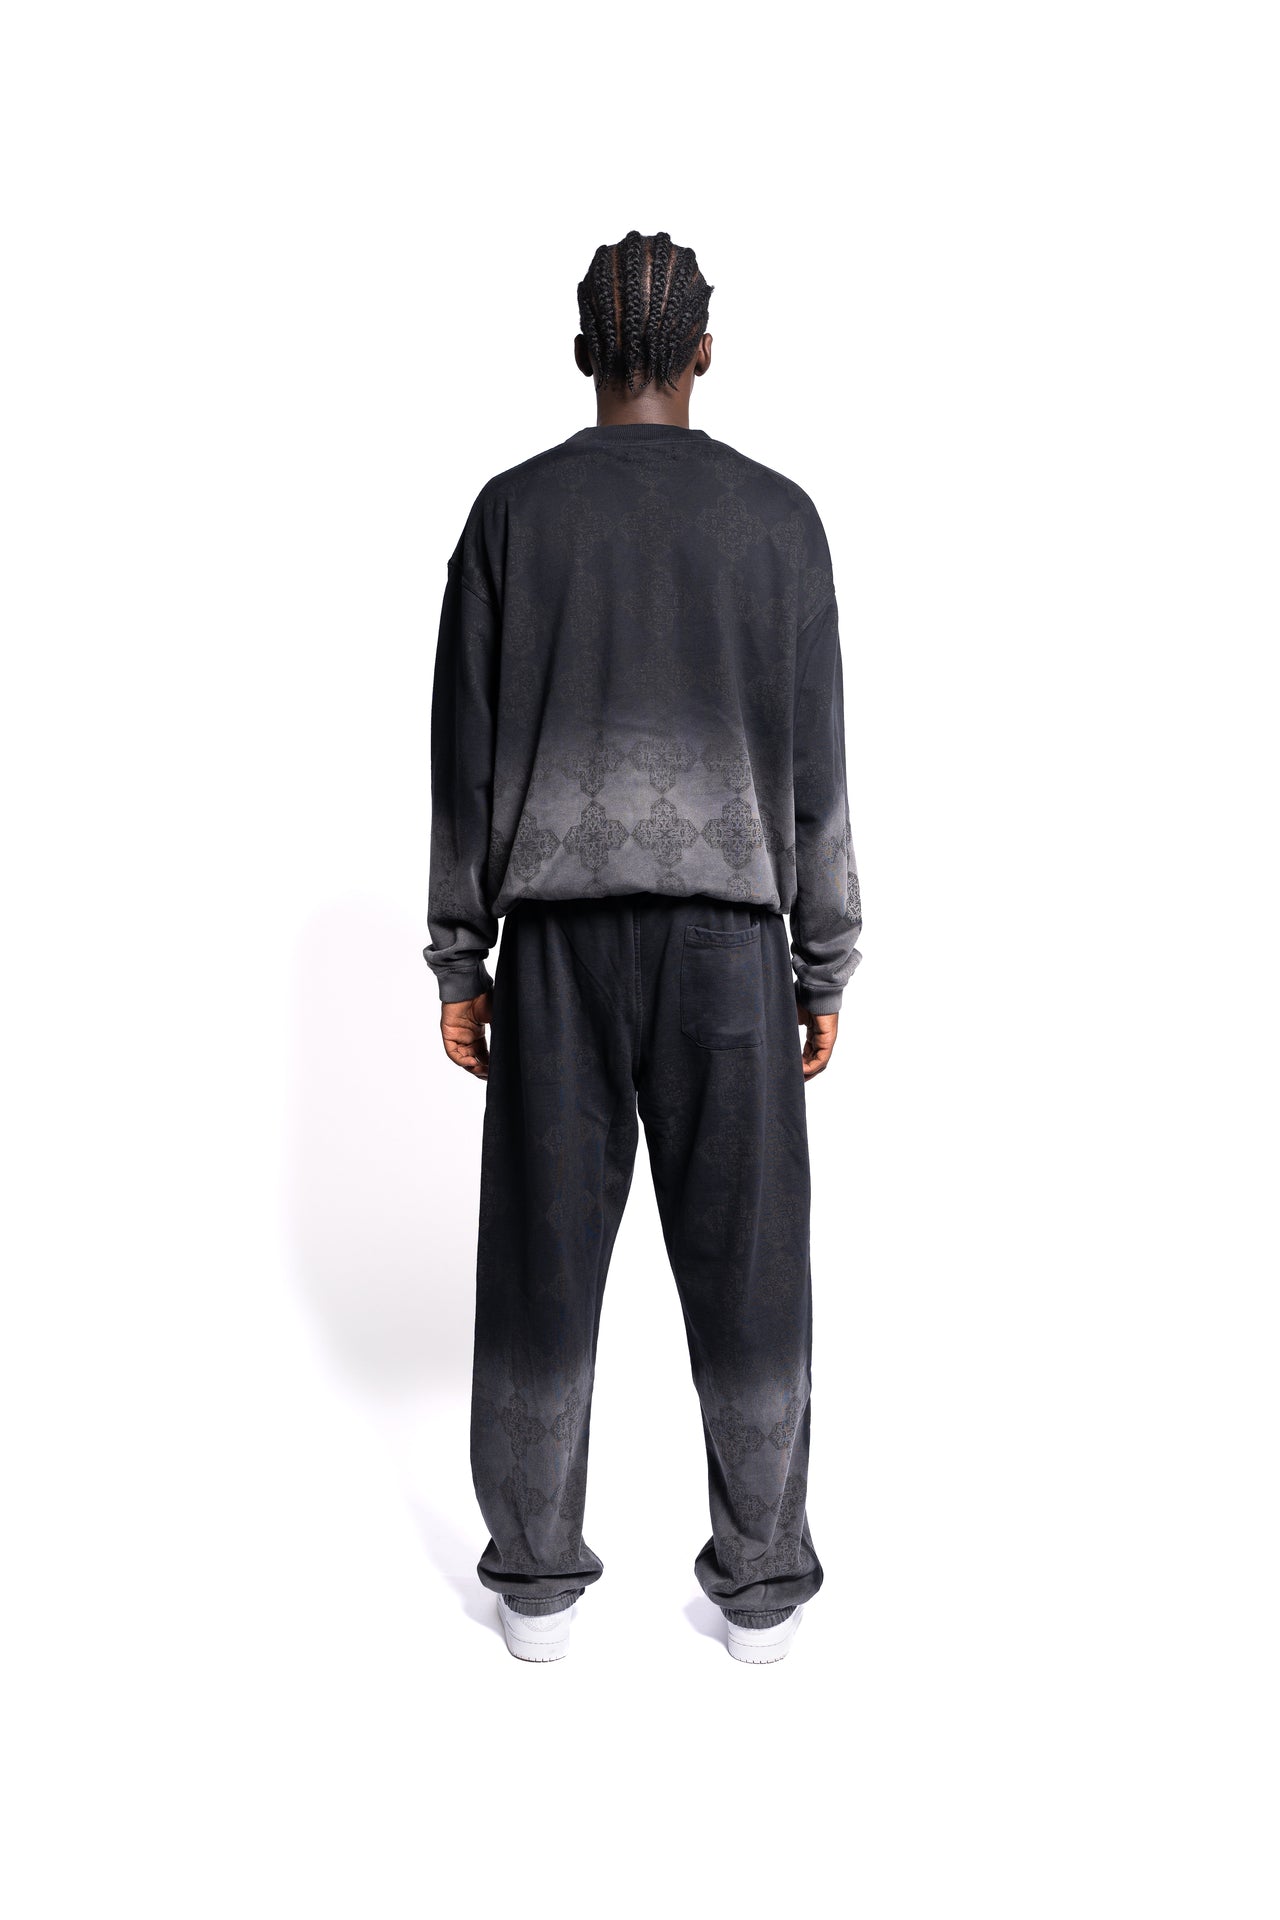 Rückansicht eines trendigen schwarzen Monogramm-Sweatshirts ohne Kapuze